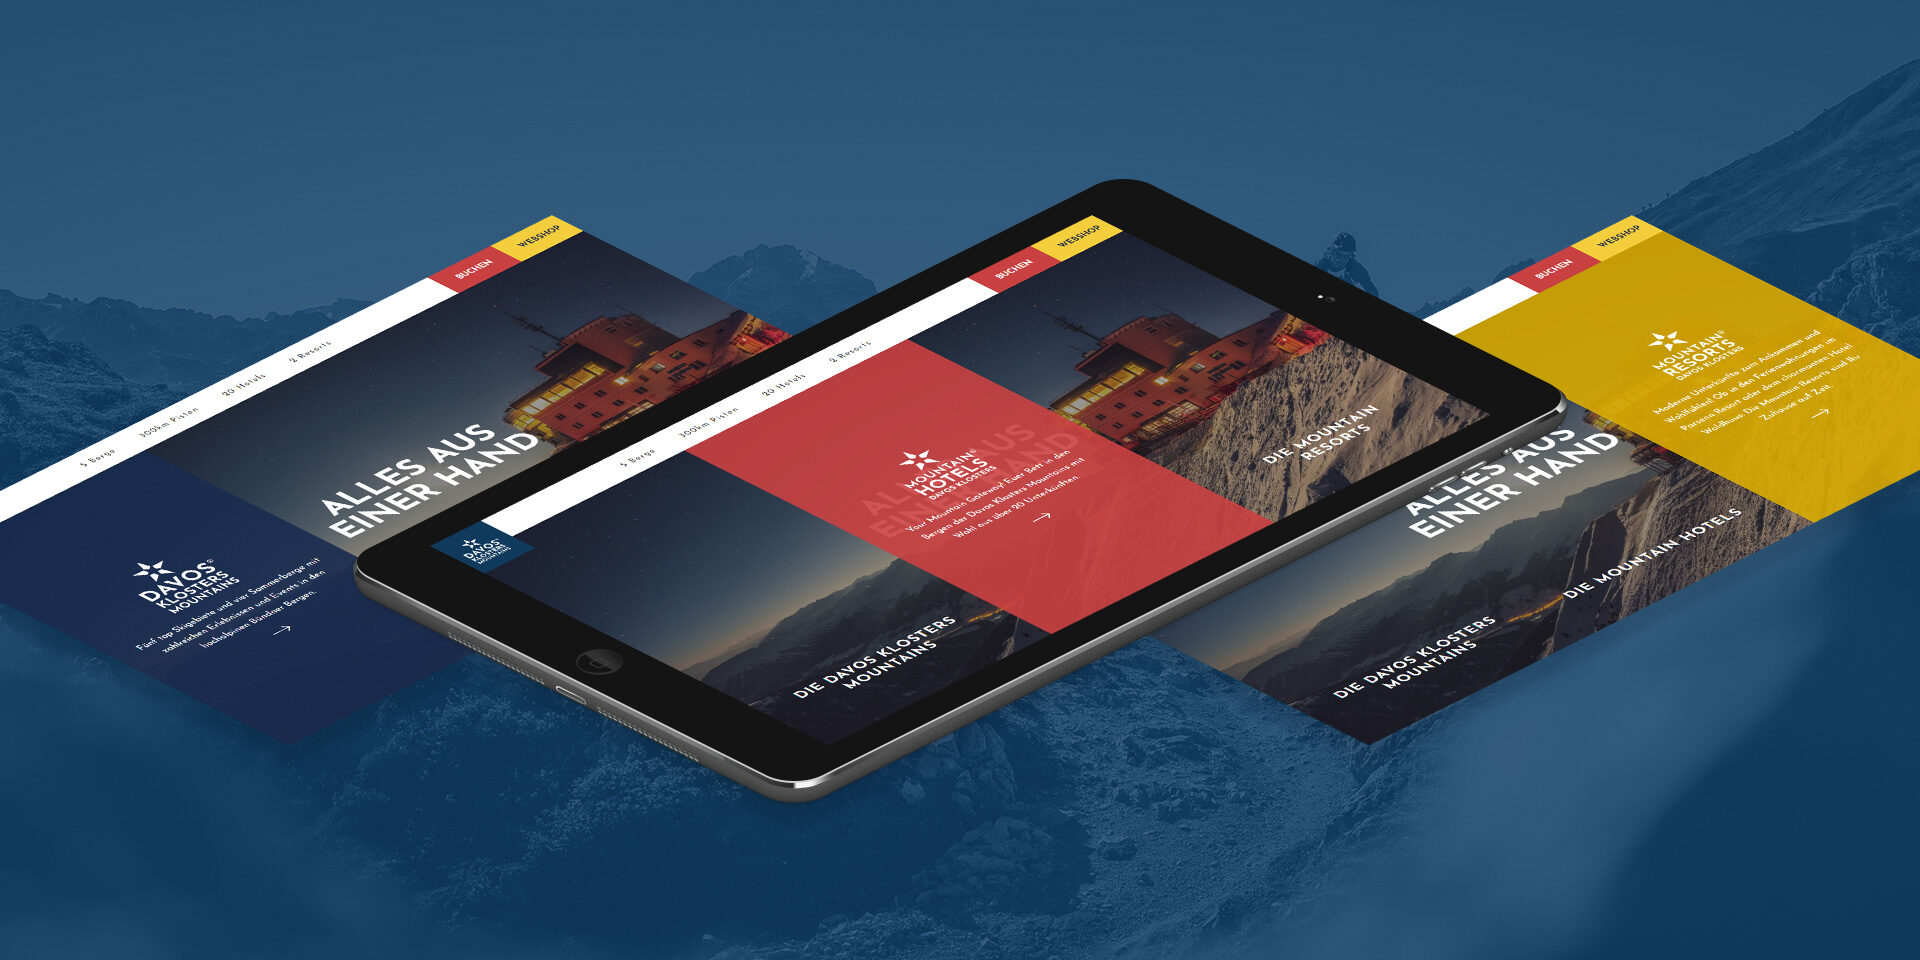 Mockup der neuen Website von Davos Klosters Mountains, dargestellt auf einem Tablet.